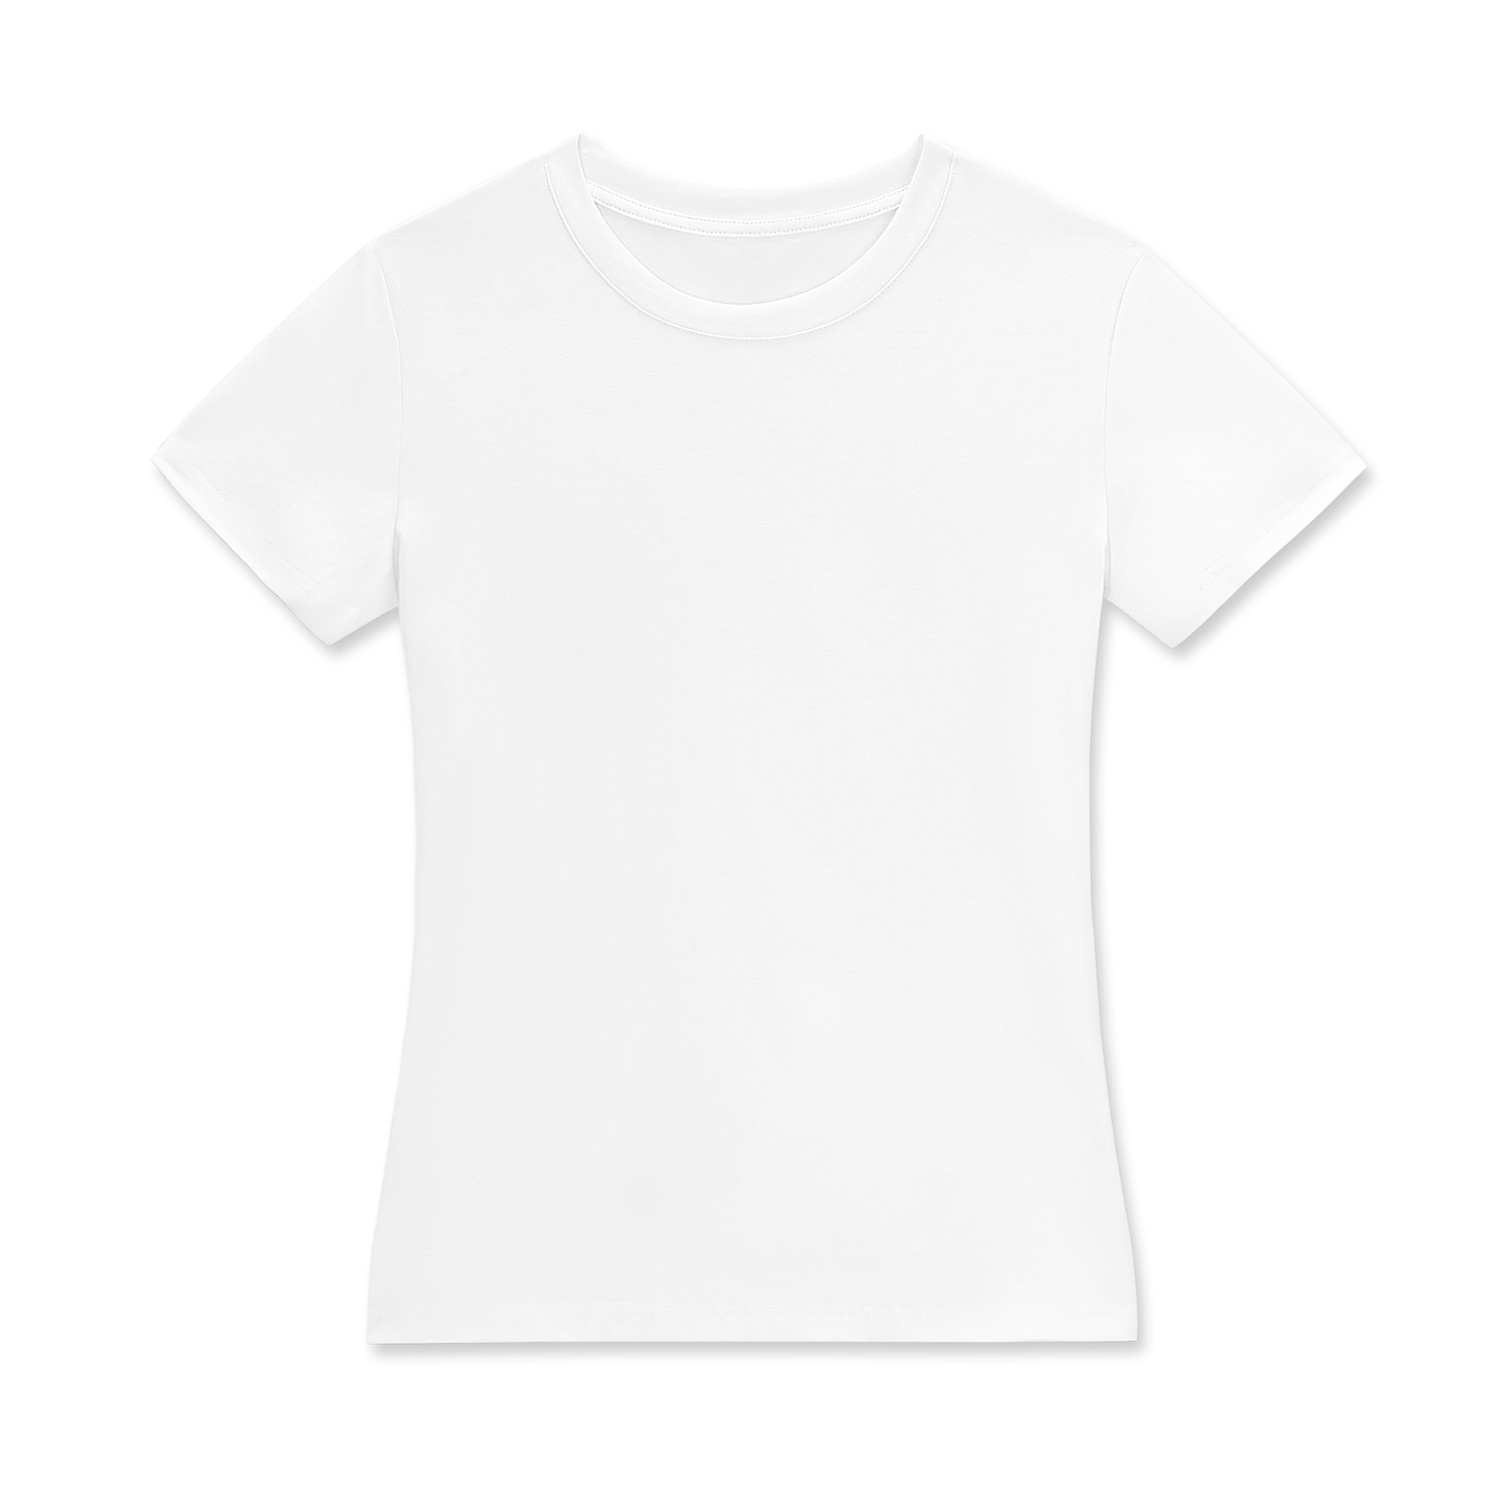 Customizable All-Over Print Women's Crew Neck T-Shirt - Print On Demand | HugePOD